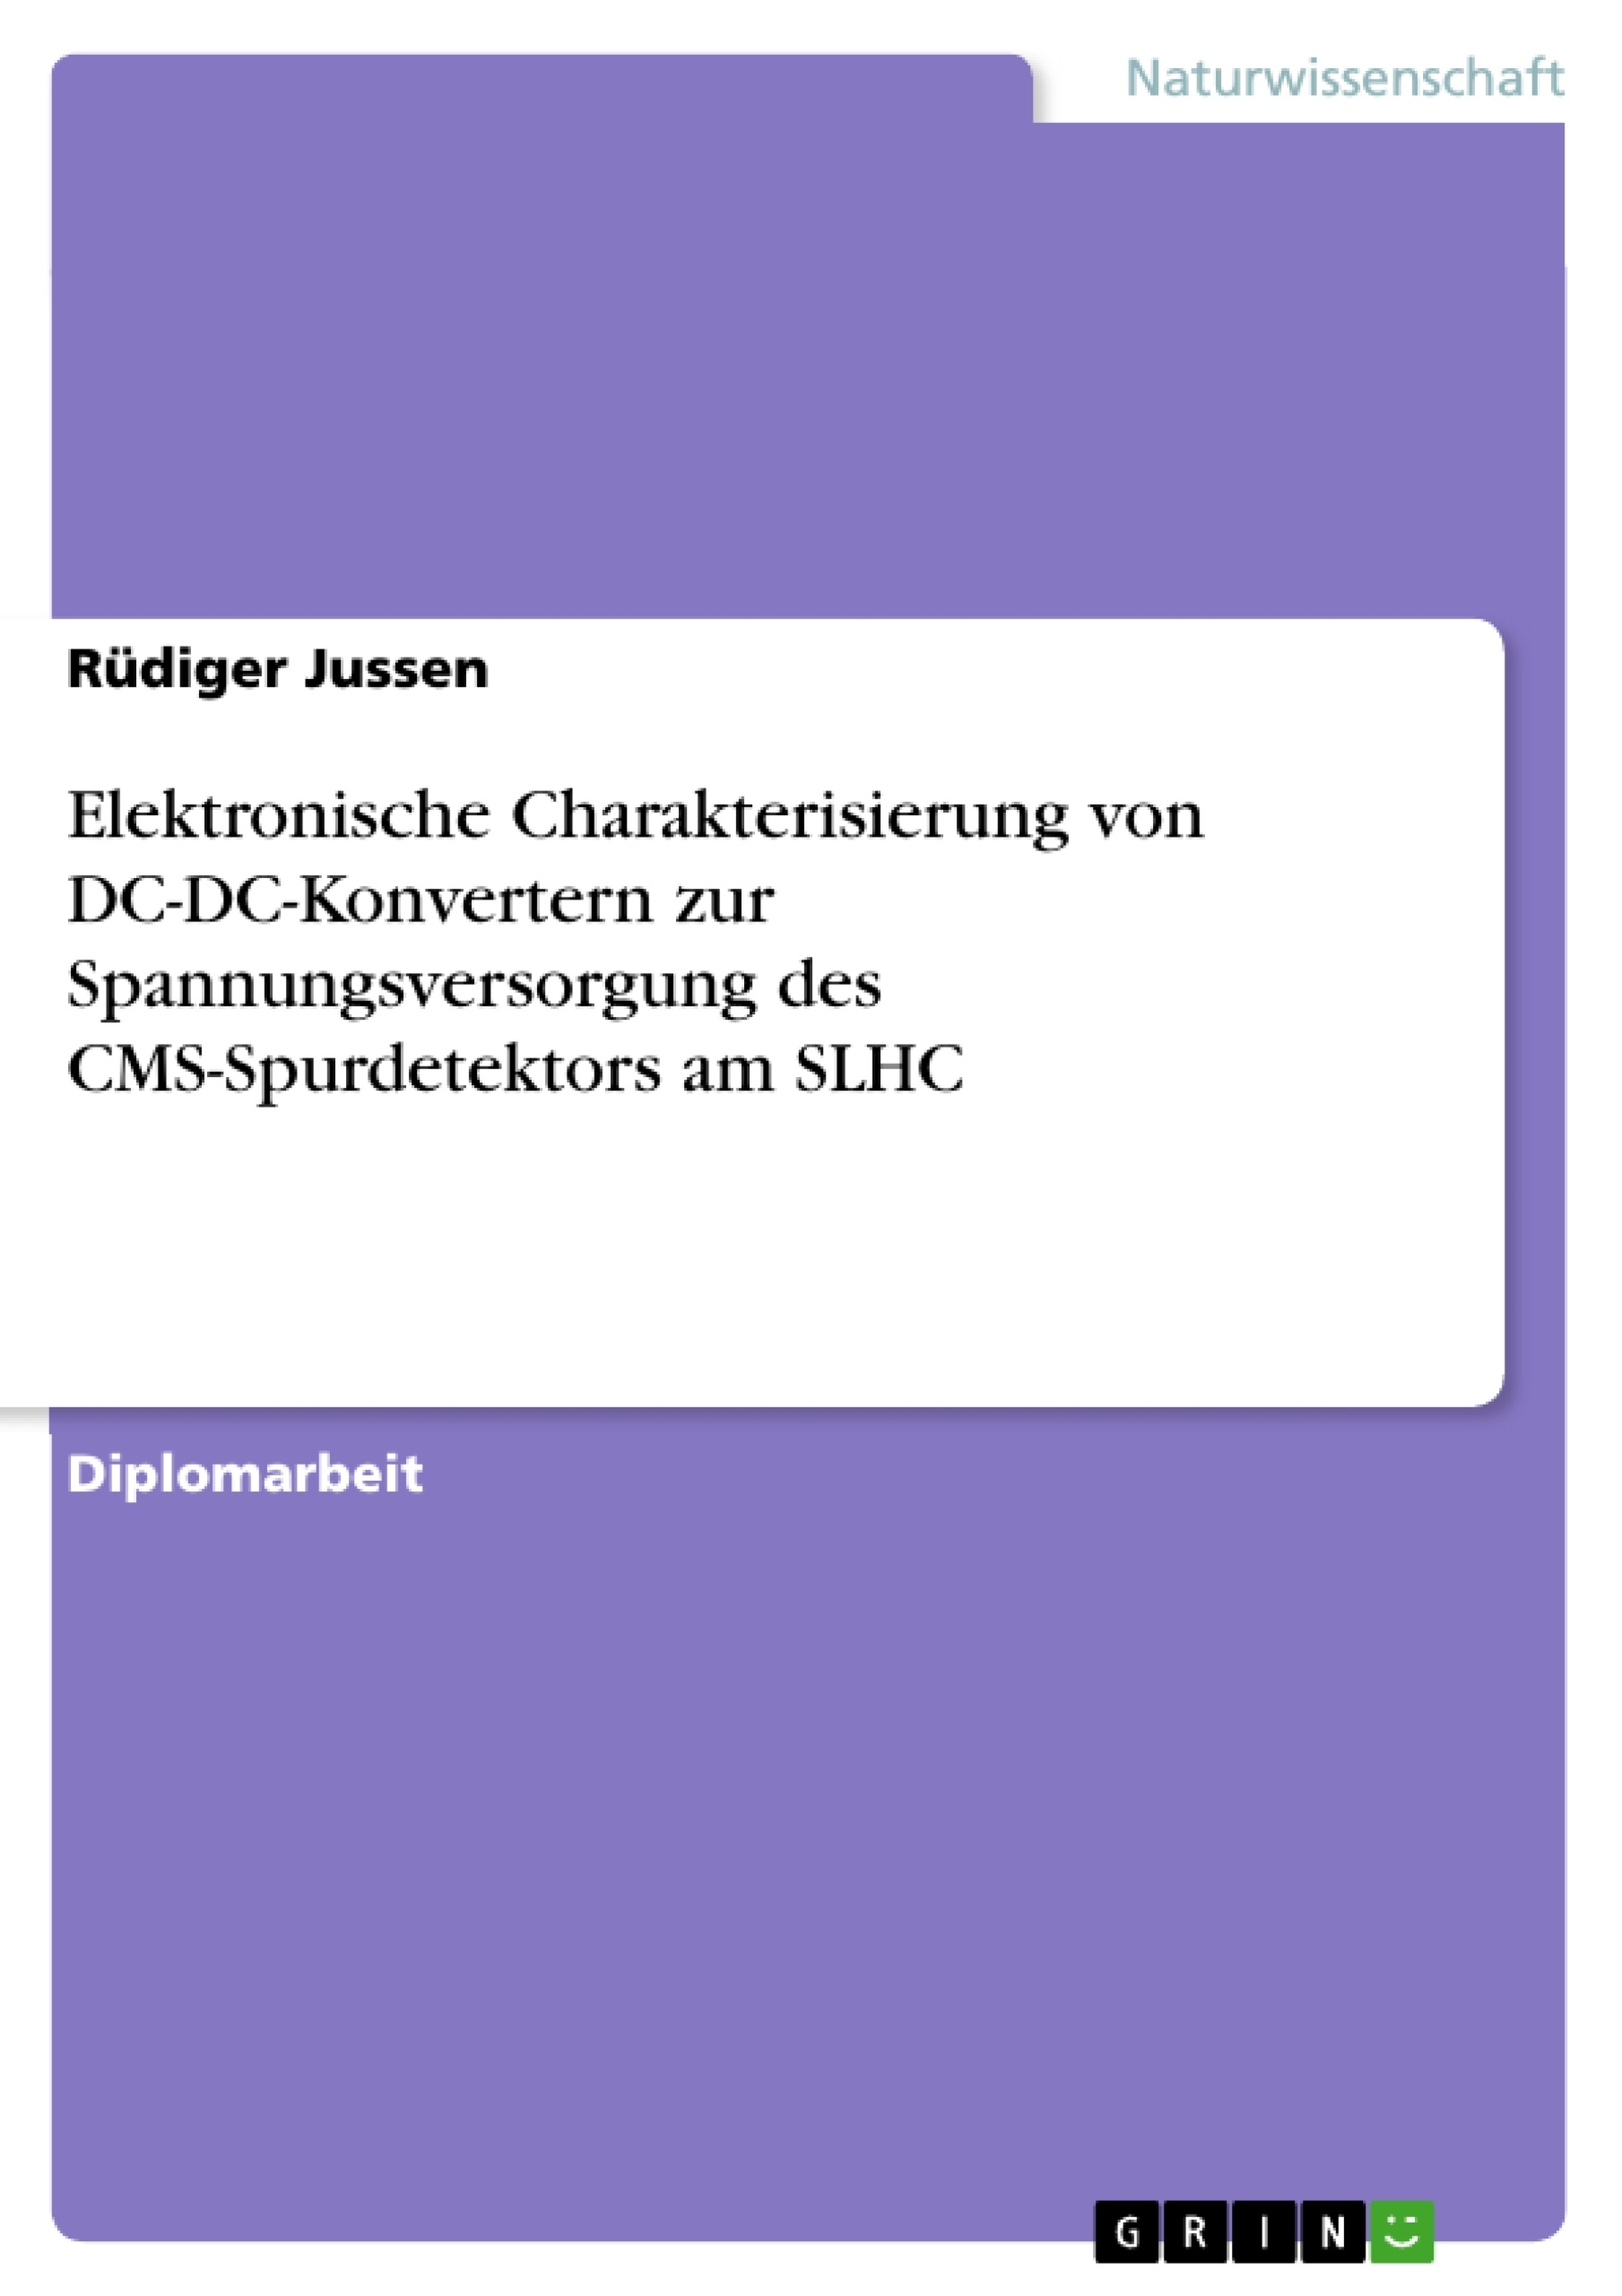 Title: Elektronische Charakterisierung von DC-DC-Konvertern zur Spannungsversorgung des CMS-Spurdetektors am SLHC